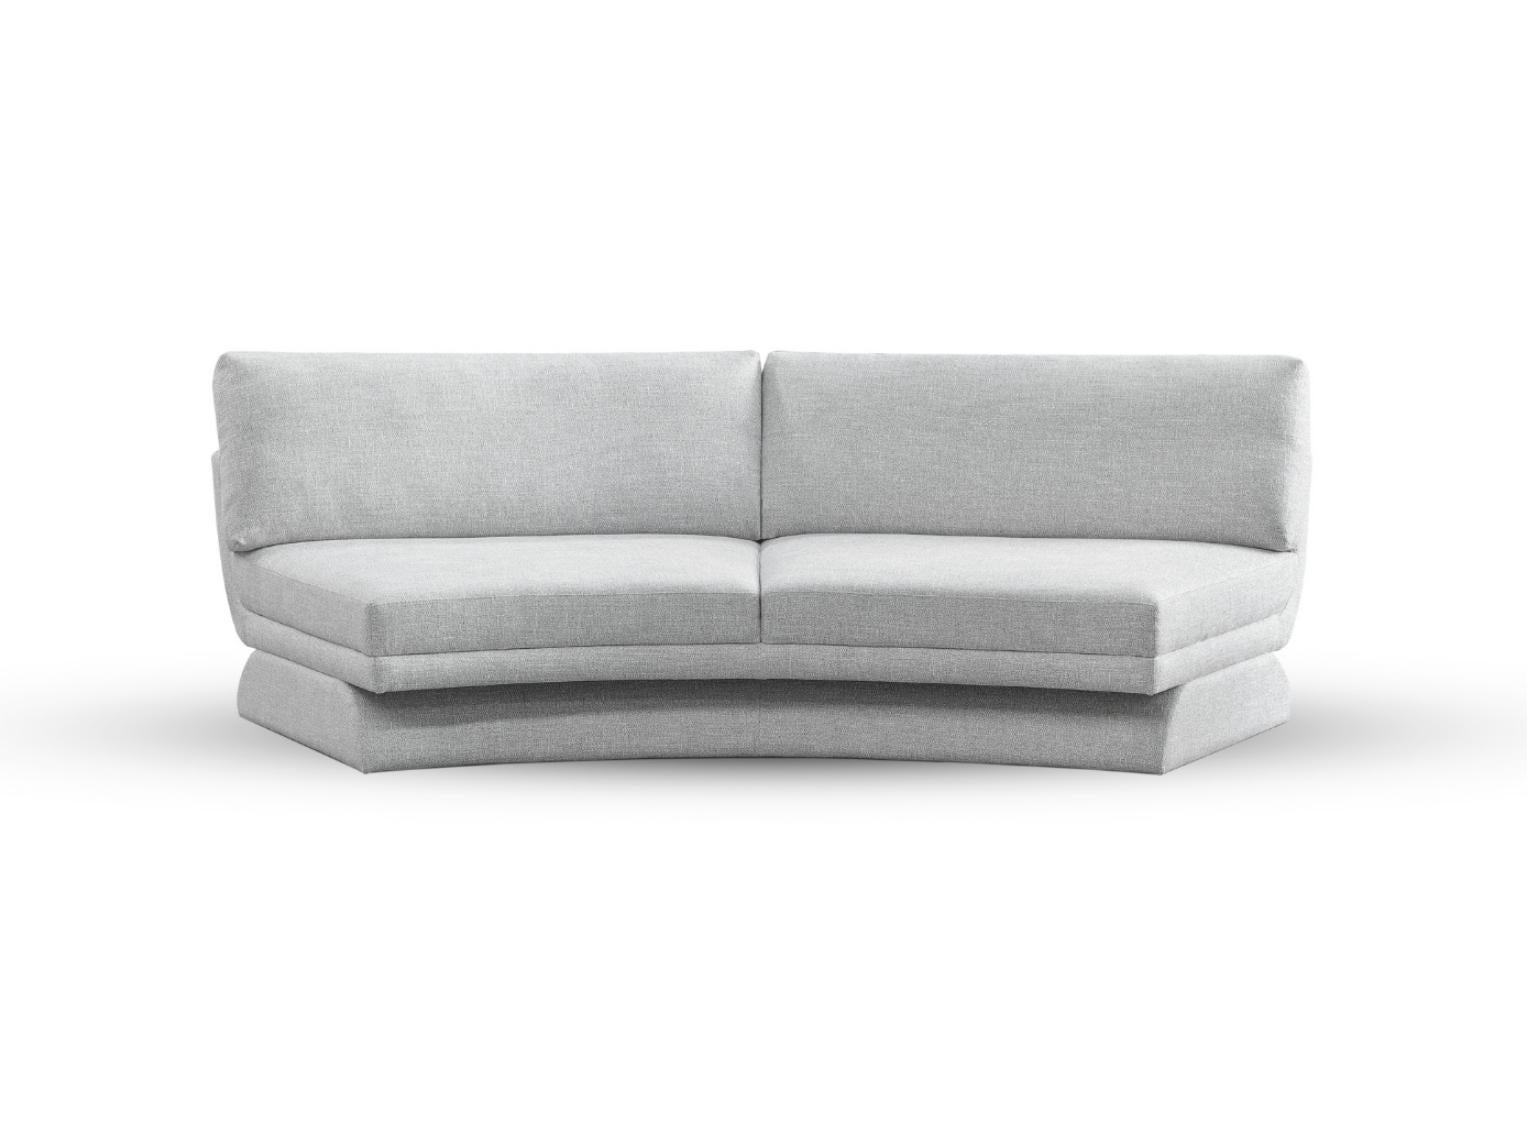 Fabric Oscar End Modular Sofa by DUISTT  For Sale